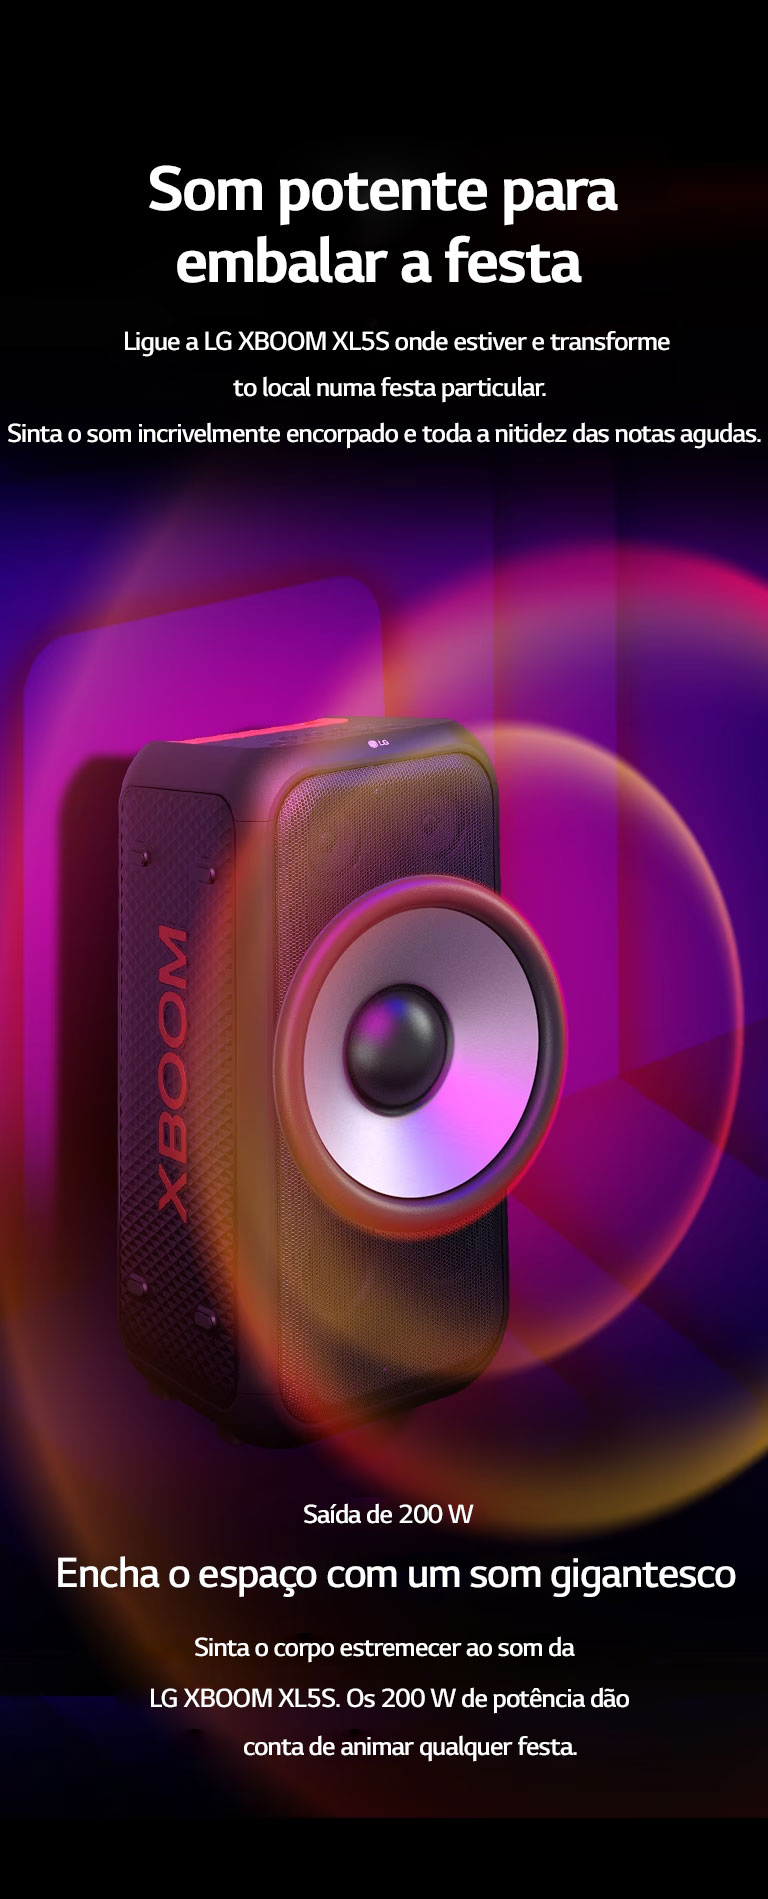 A LG XBOOM XL7S está disposta num espaço infinito. Na parede, gráficos sonoros quadrados estão representados. No meio da caixa de som, um woofer gigante de 8 polegadas aparece ampliado para enfatizar os 250W de potência. Ondas sonoras saem do woofer.